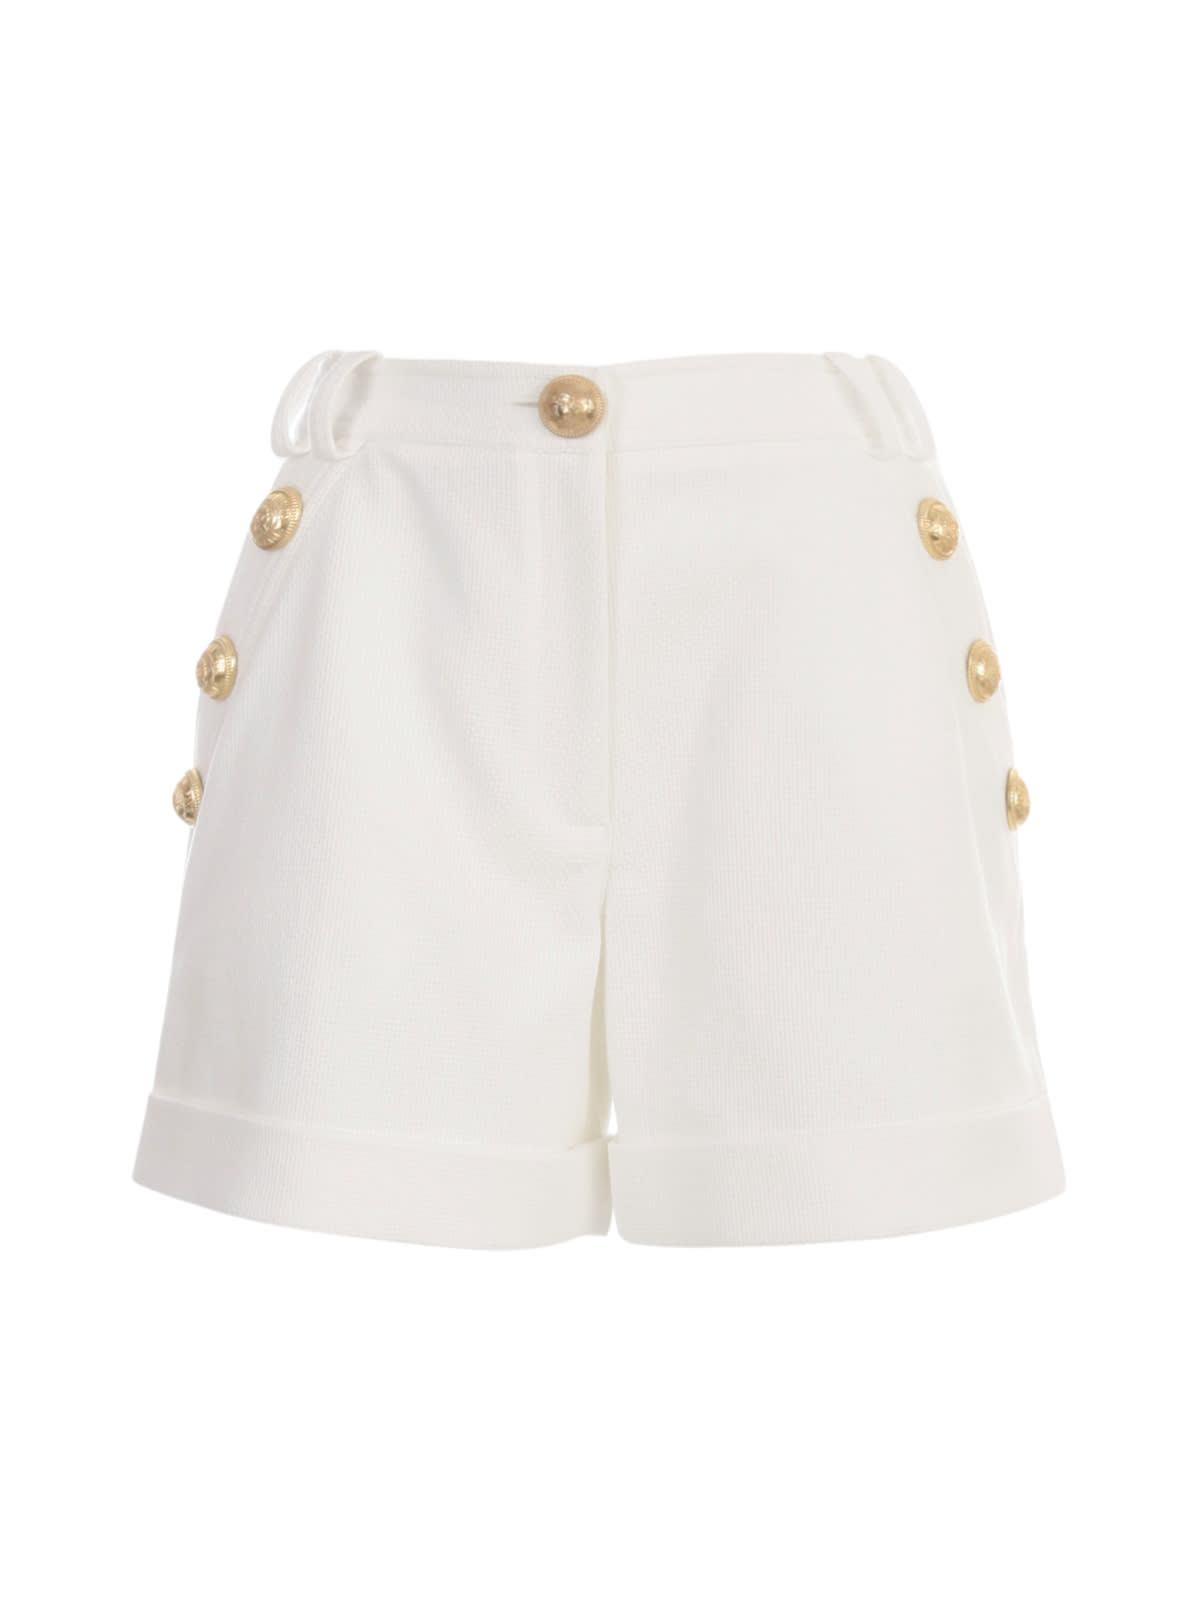 Balmain Low-rise Cotton-pique Shorts